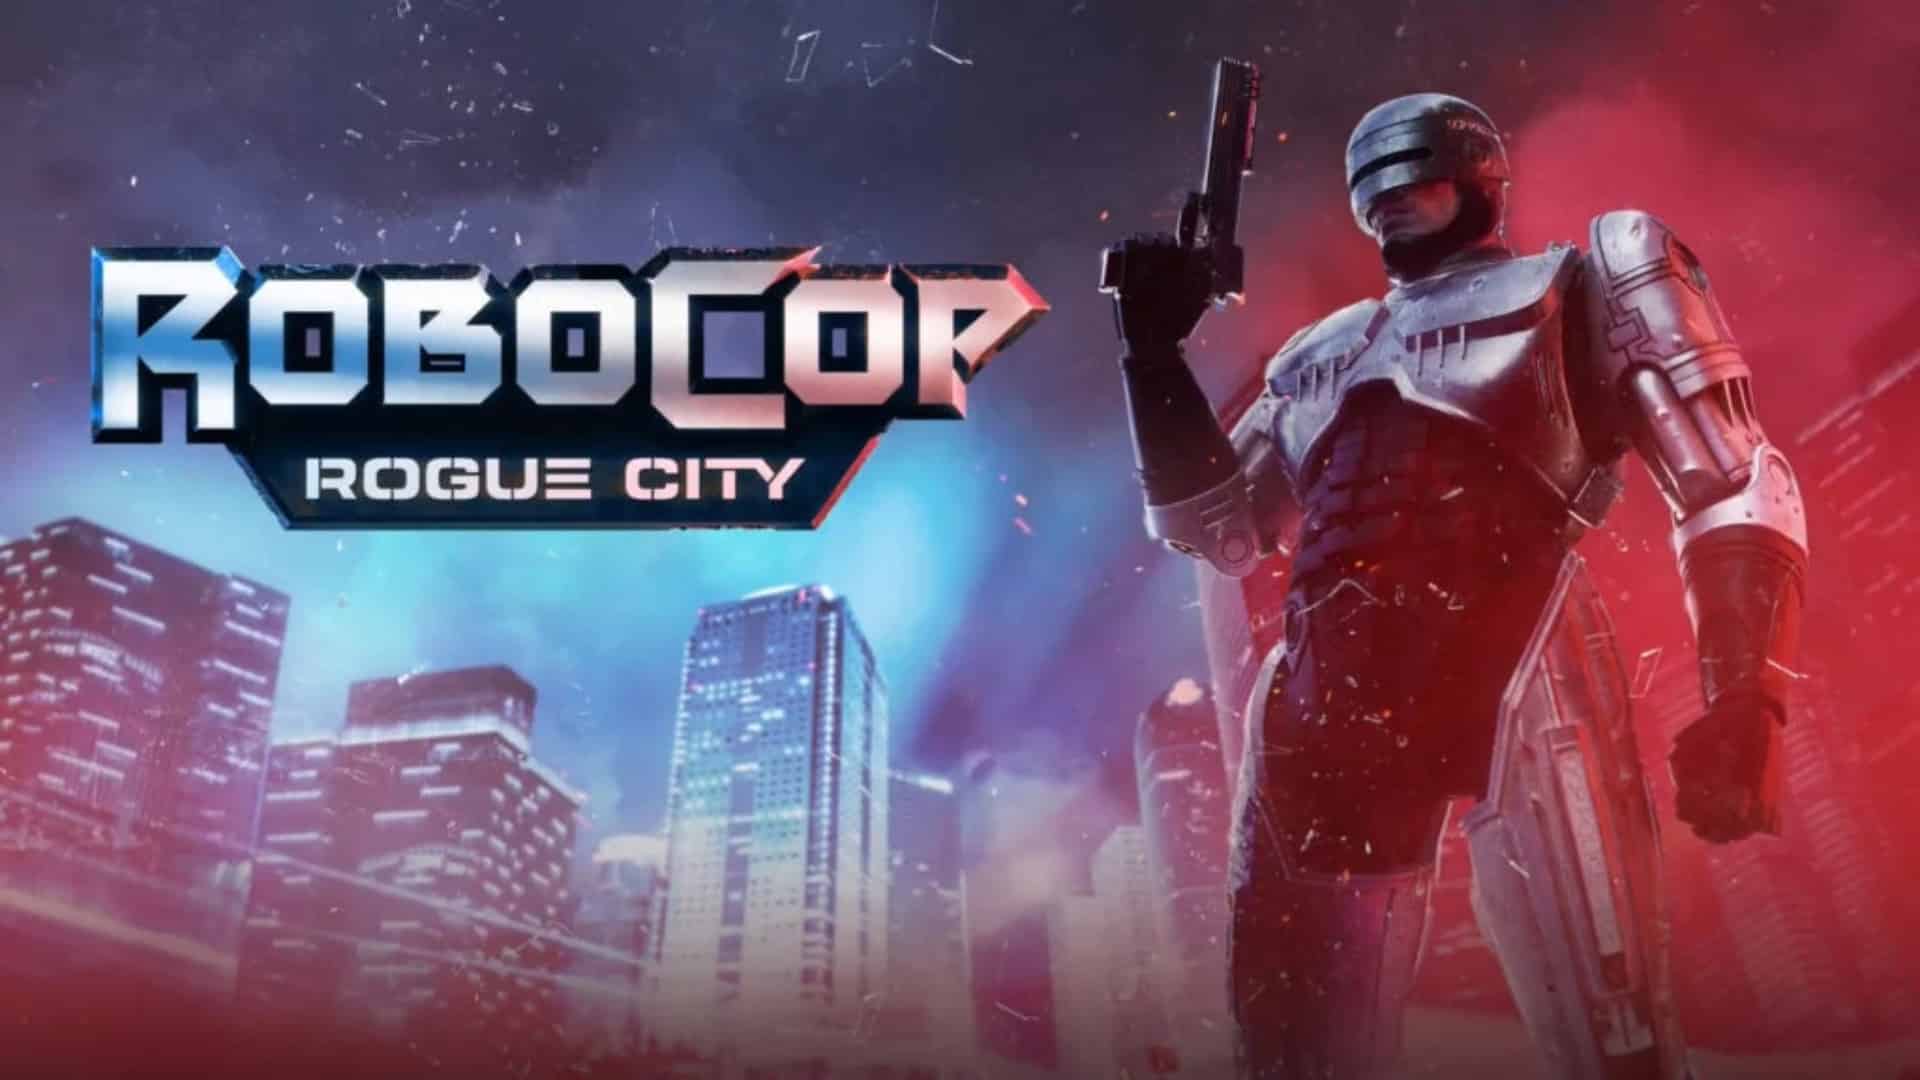 for mac download RoboCop: Rogue City